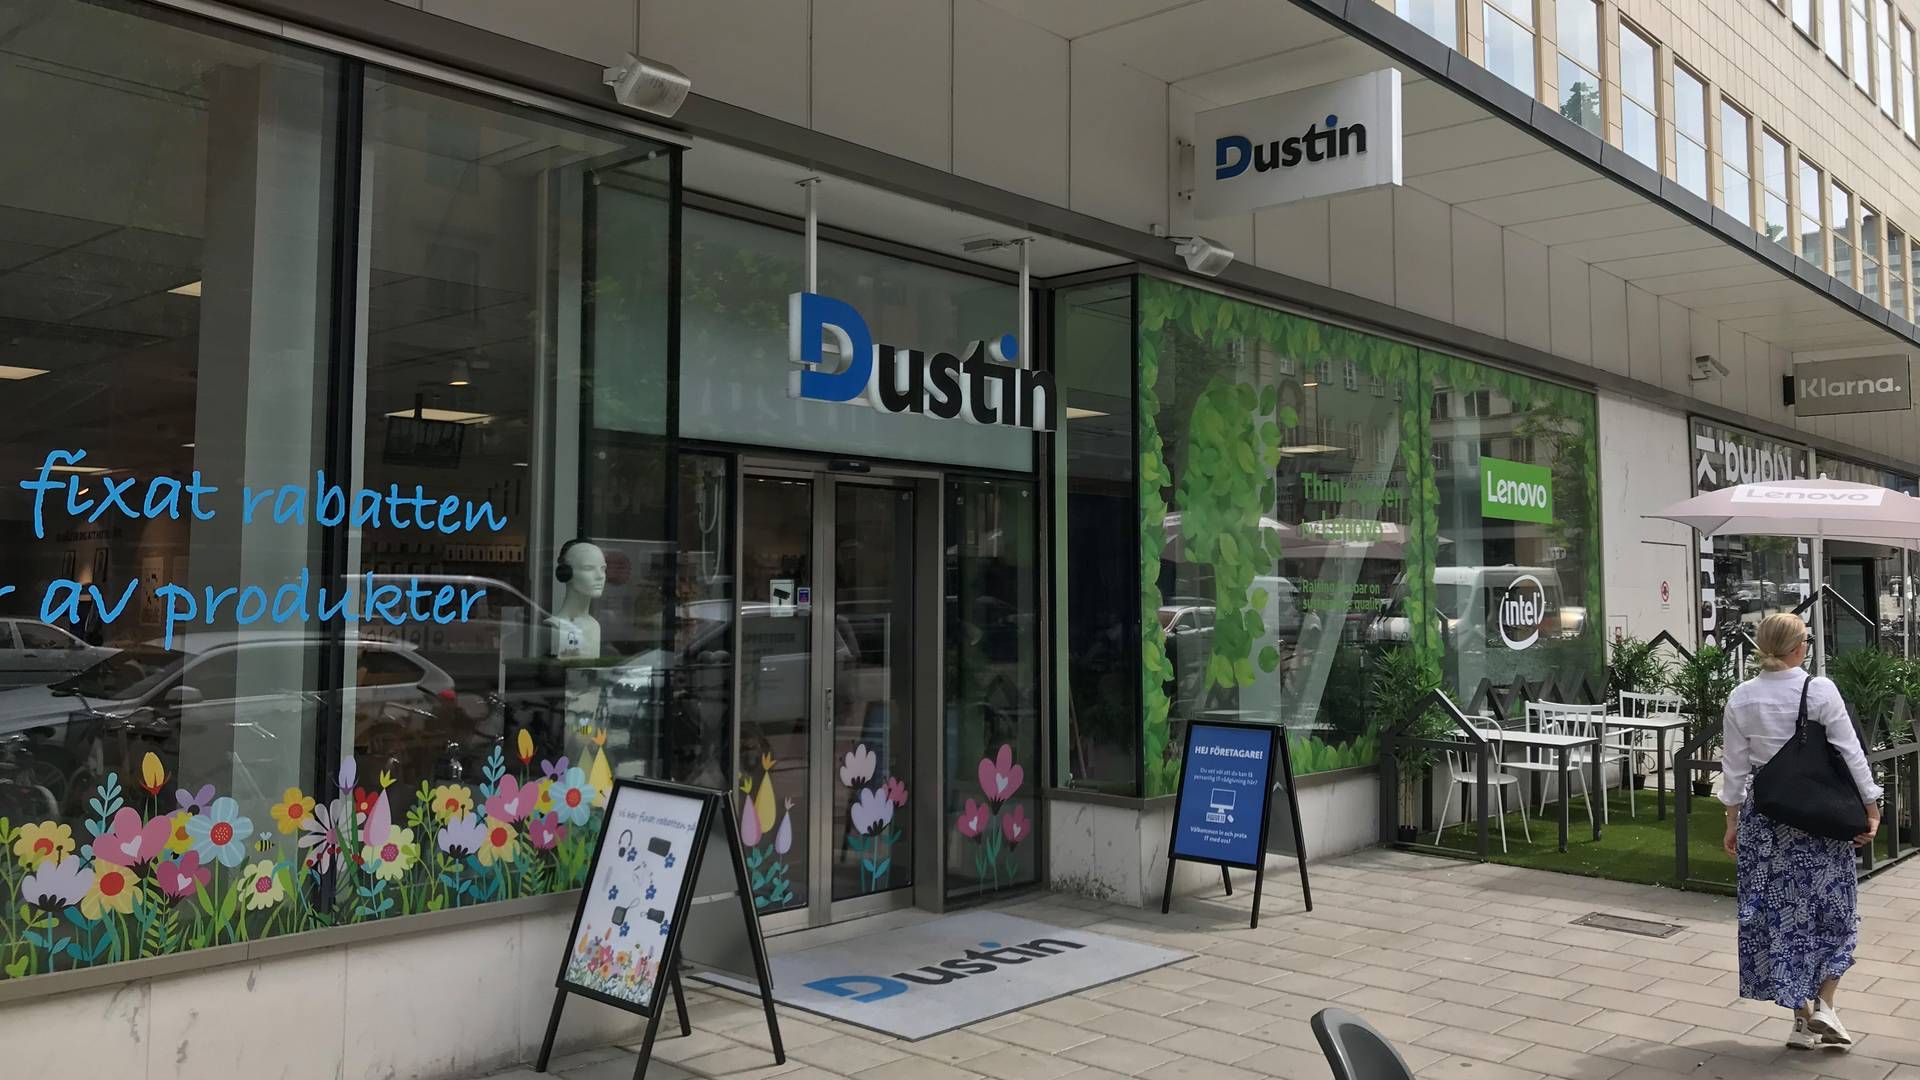 Dustin er grundlagt i Sverige, men har afdelinger i hele Norden. | Foto: Malte Oxvig